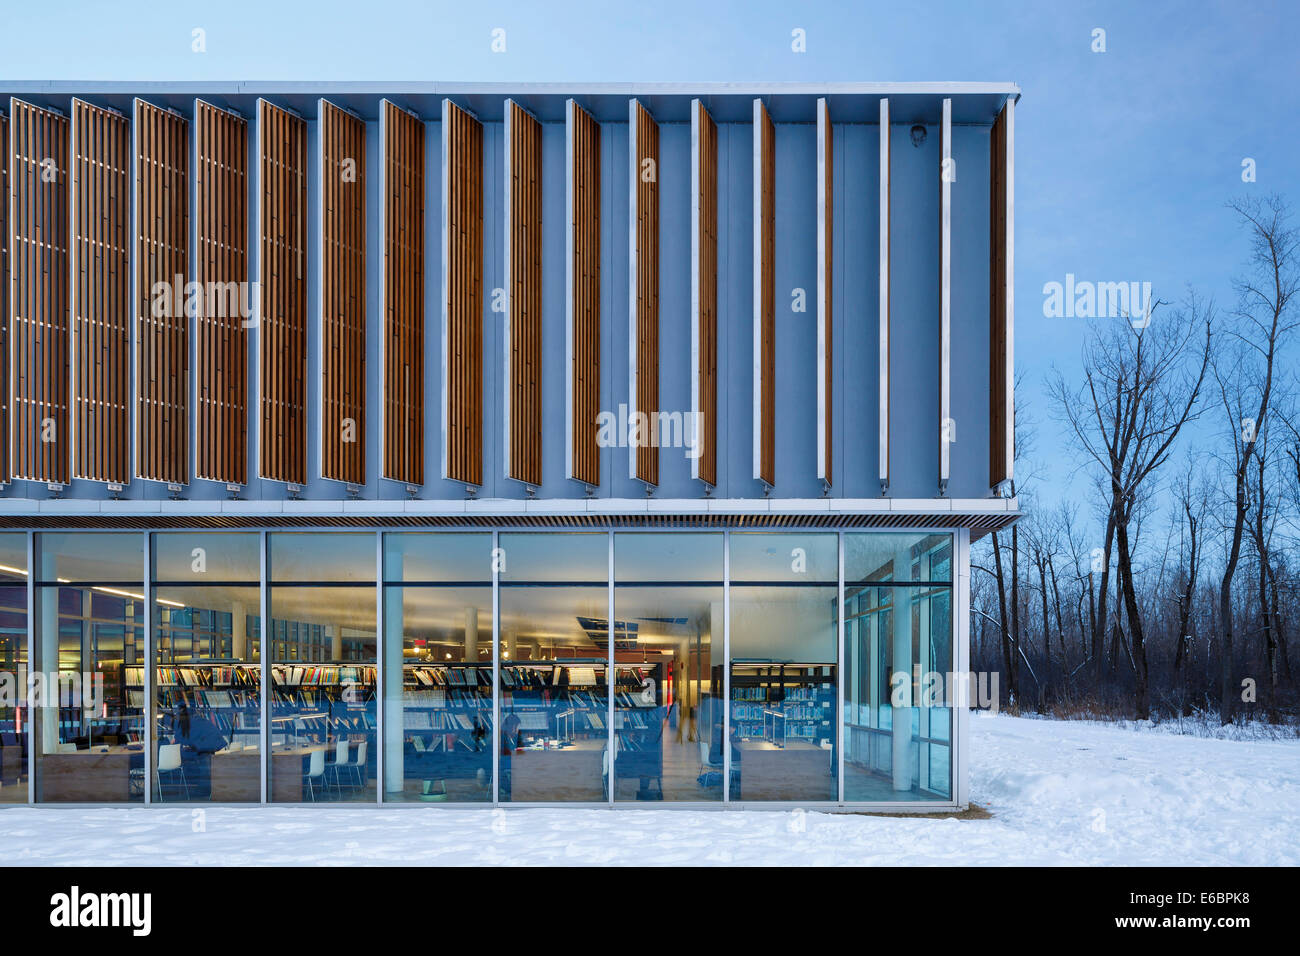 Bibliotheque Raymond Levesque, Longueuil, Canada. Architecte : Atelier de série et Jodoin Lamarre Pratte, 2010. Élévation partielle à l'ud Banque D'Images